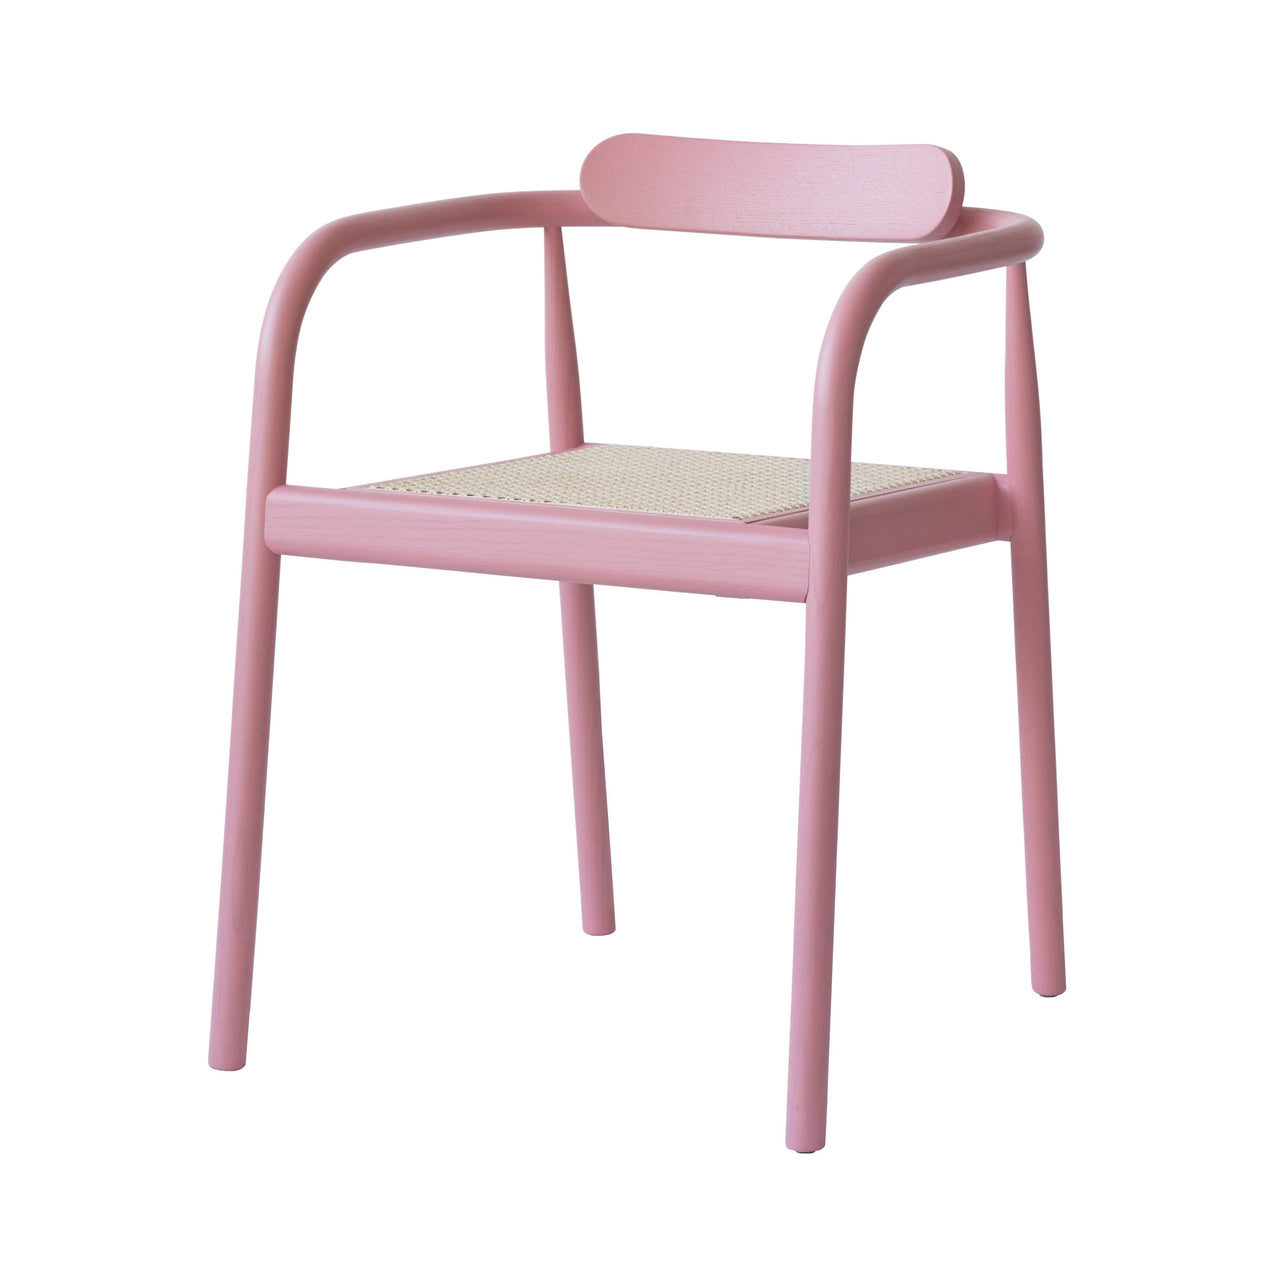 Ahm Chair: Jaipur